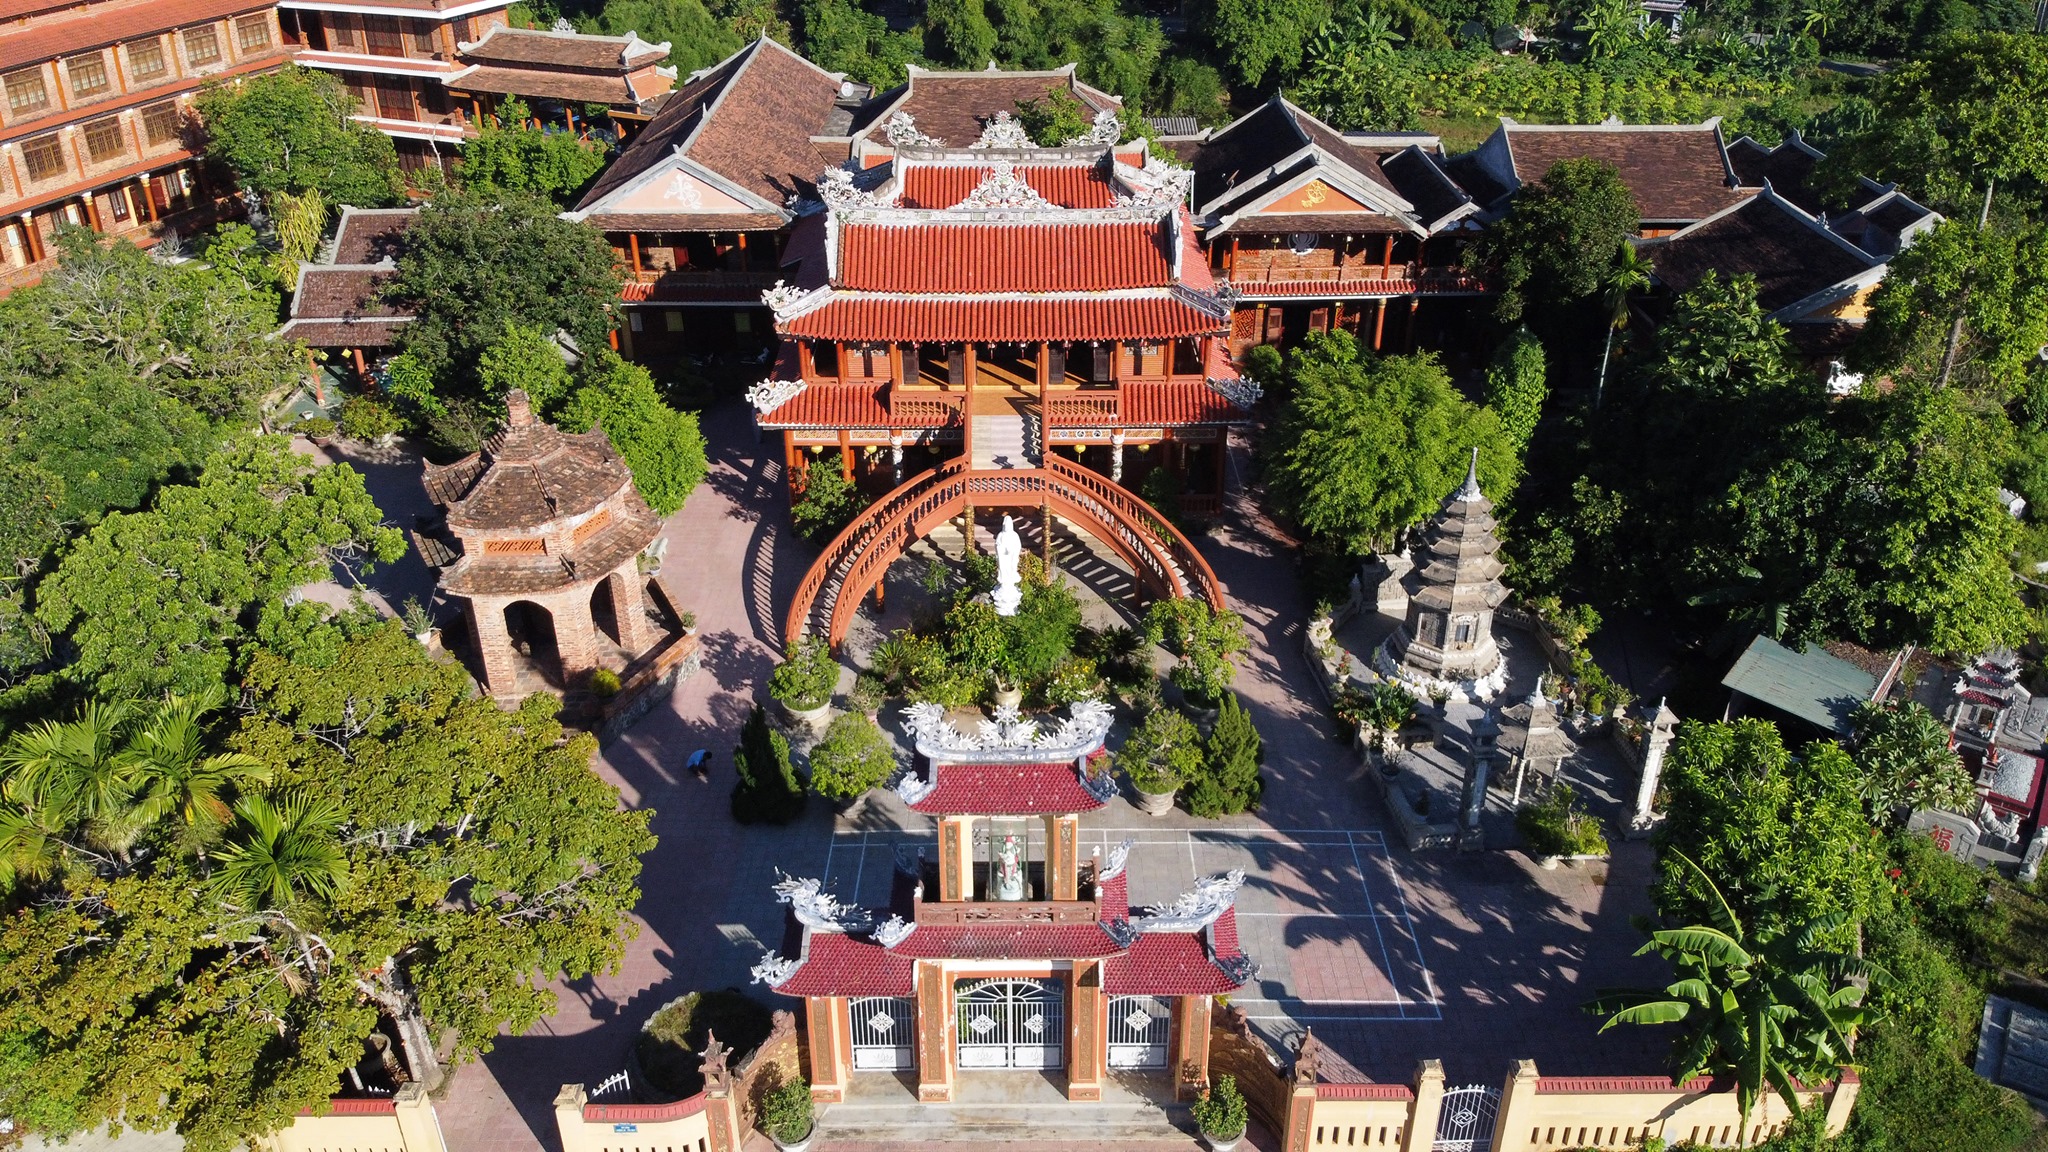 Chùa Phước Duyên - Địa điểm tâm linh nổi tiếng ở Huế